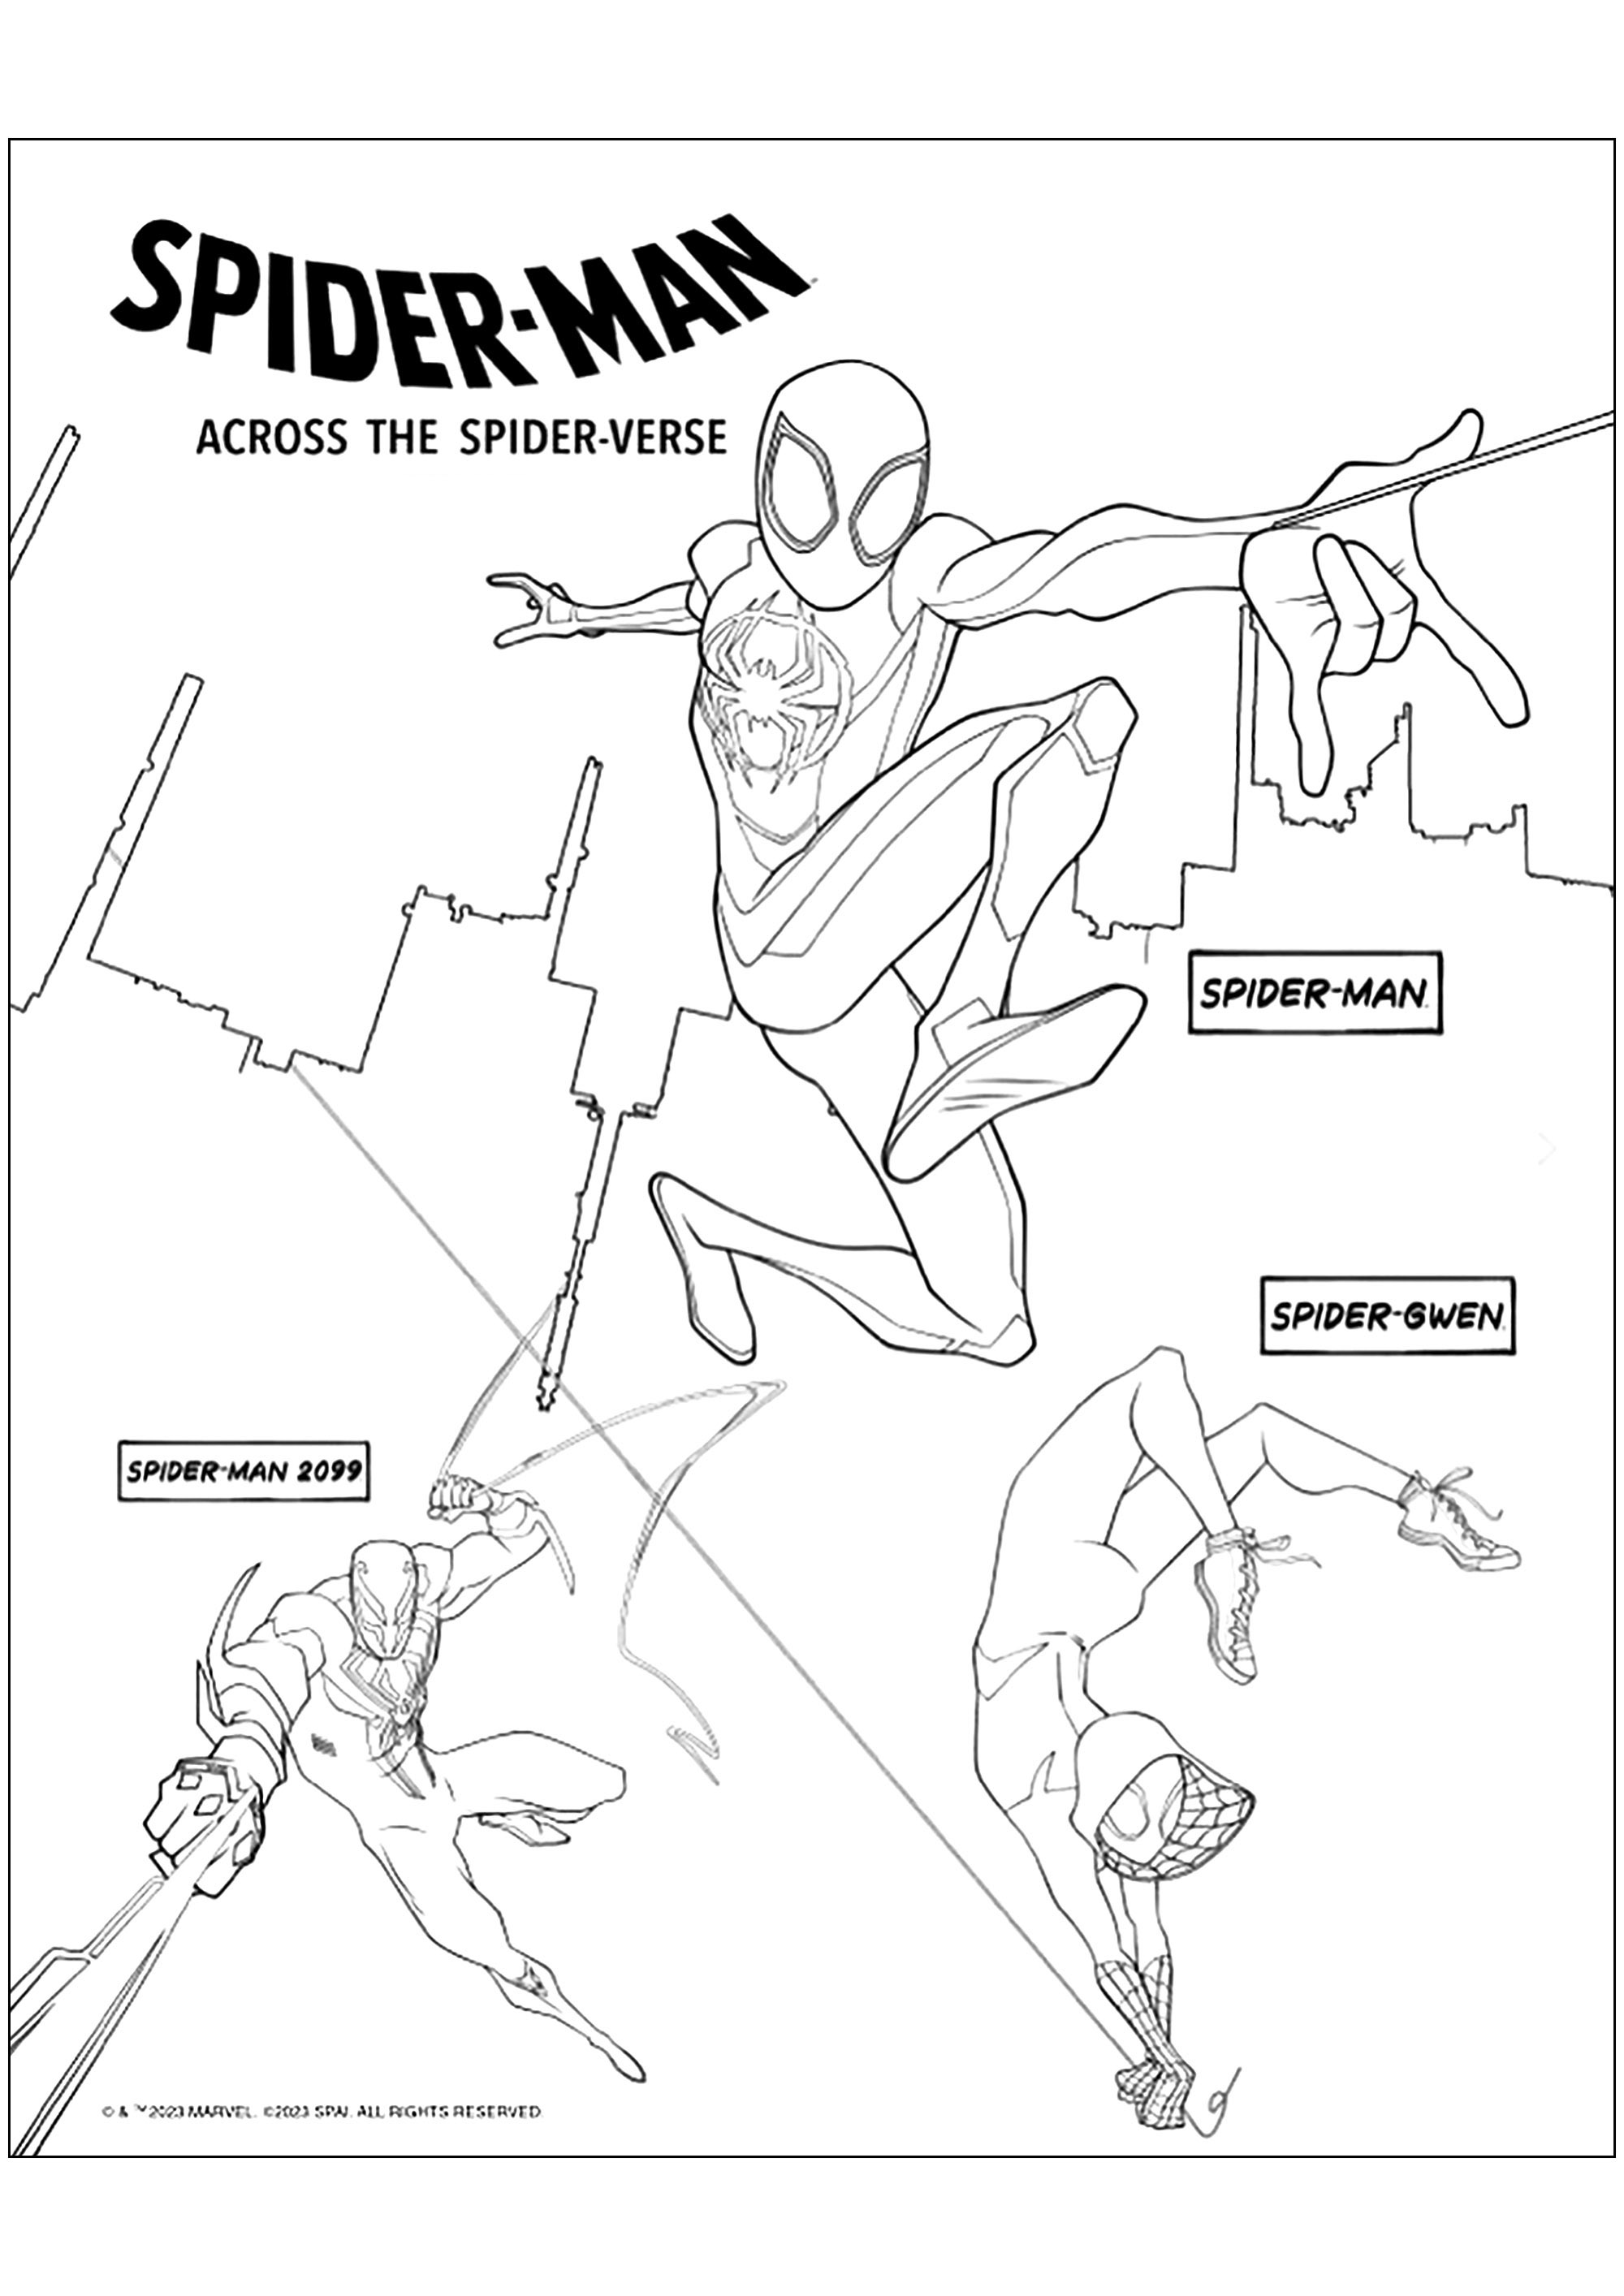 Personagens de Spider-Man Across the Spider Verse. Homem-Aranha, Gwen-Aranha (Ghost-Spider) e Homem-Aranha 2099